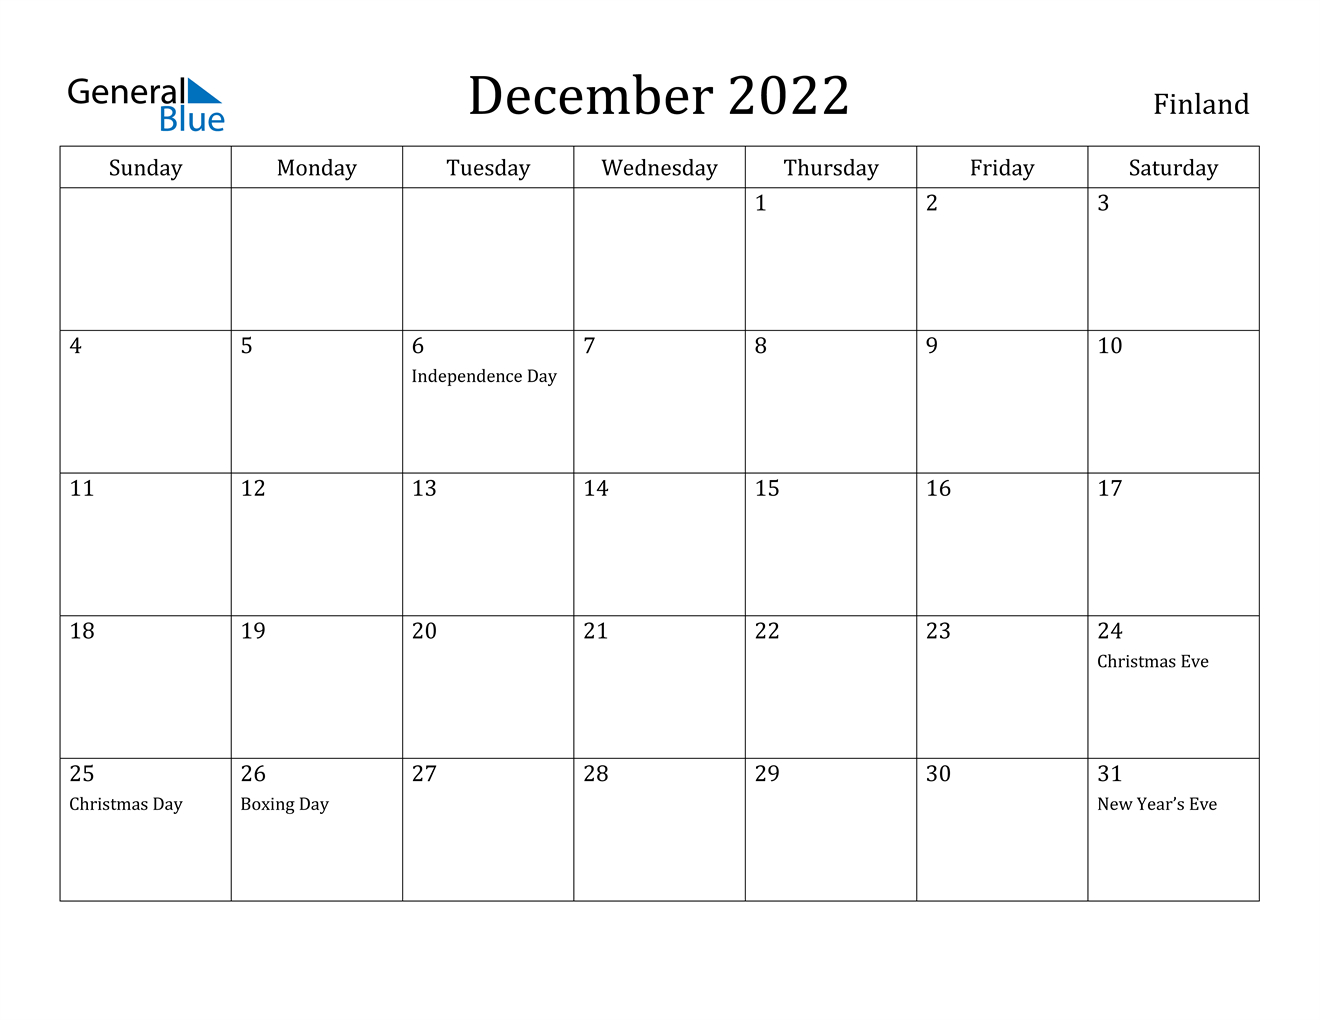 December 2022 Calendar - Finland